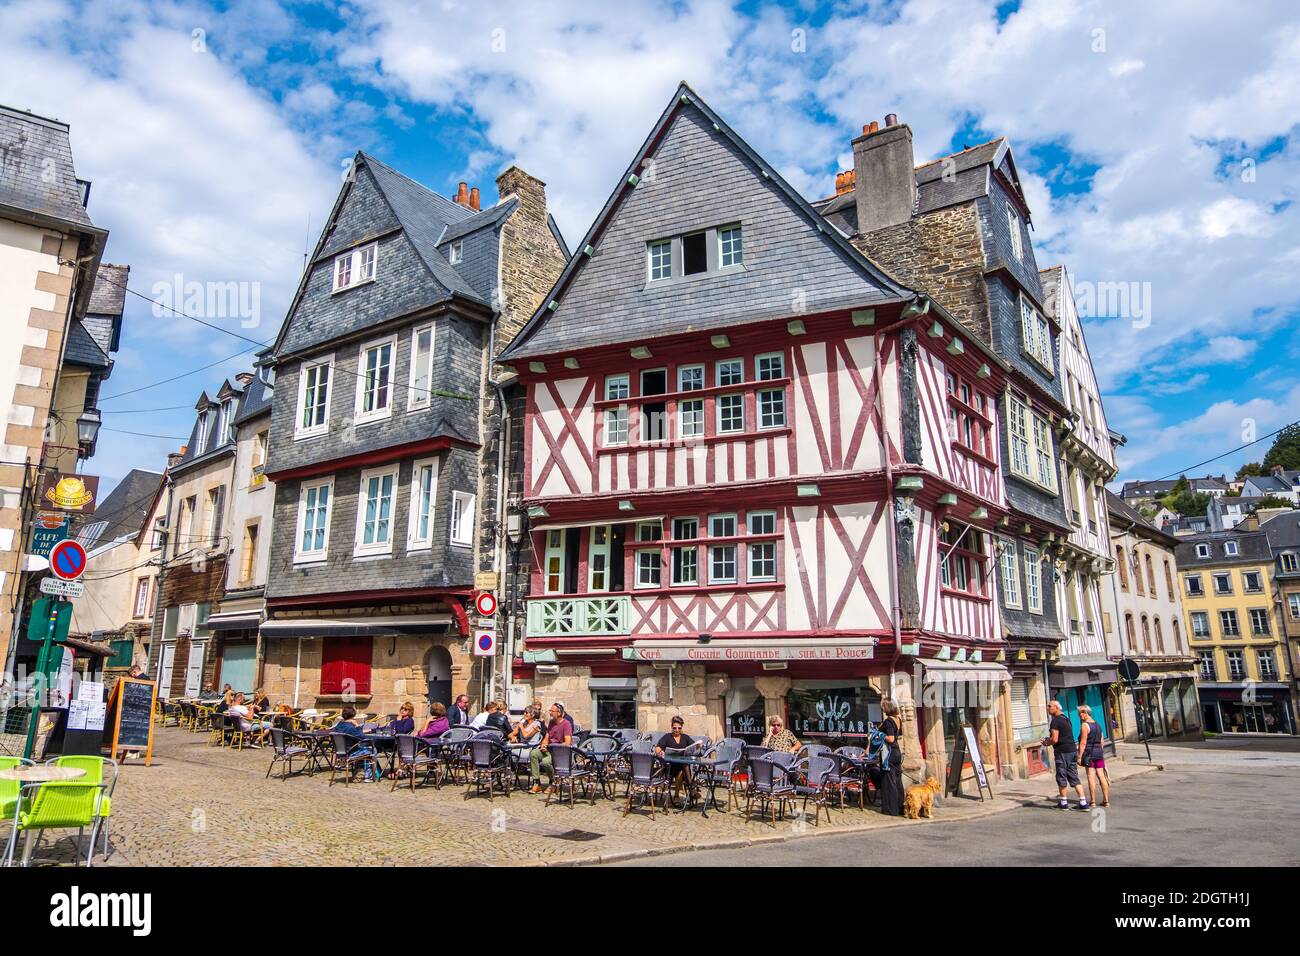 Morlaix, France - 28 août 2019 : maisons traditionnelles à colombages dans la vieille ville de Morlaix, département de Finistère, Bretagne Banque D'Images